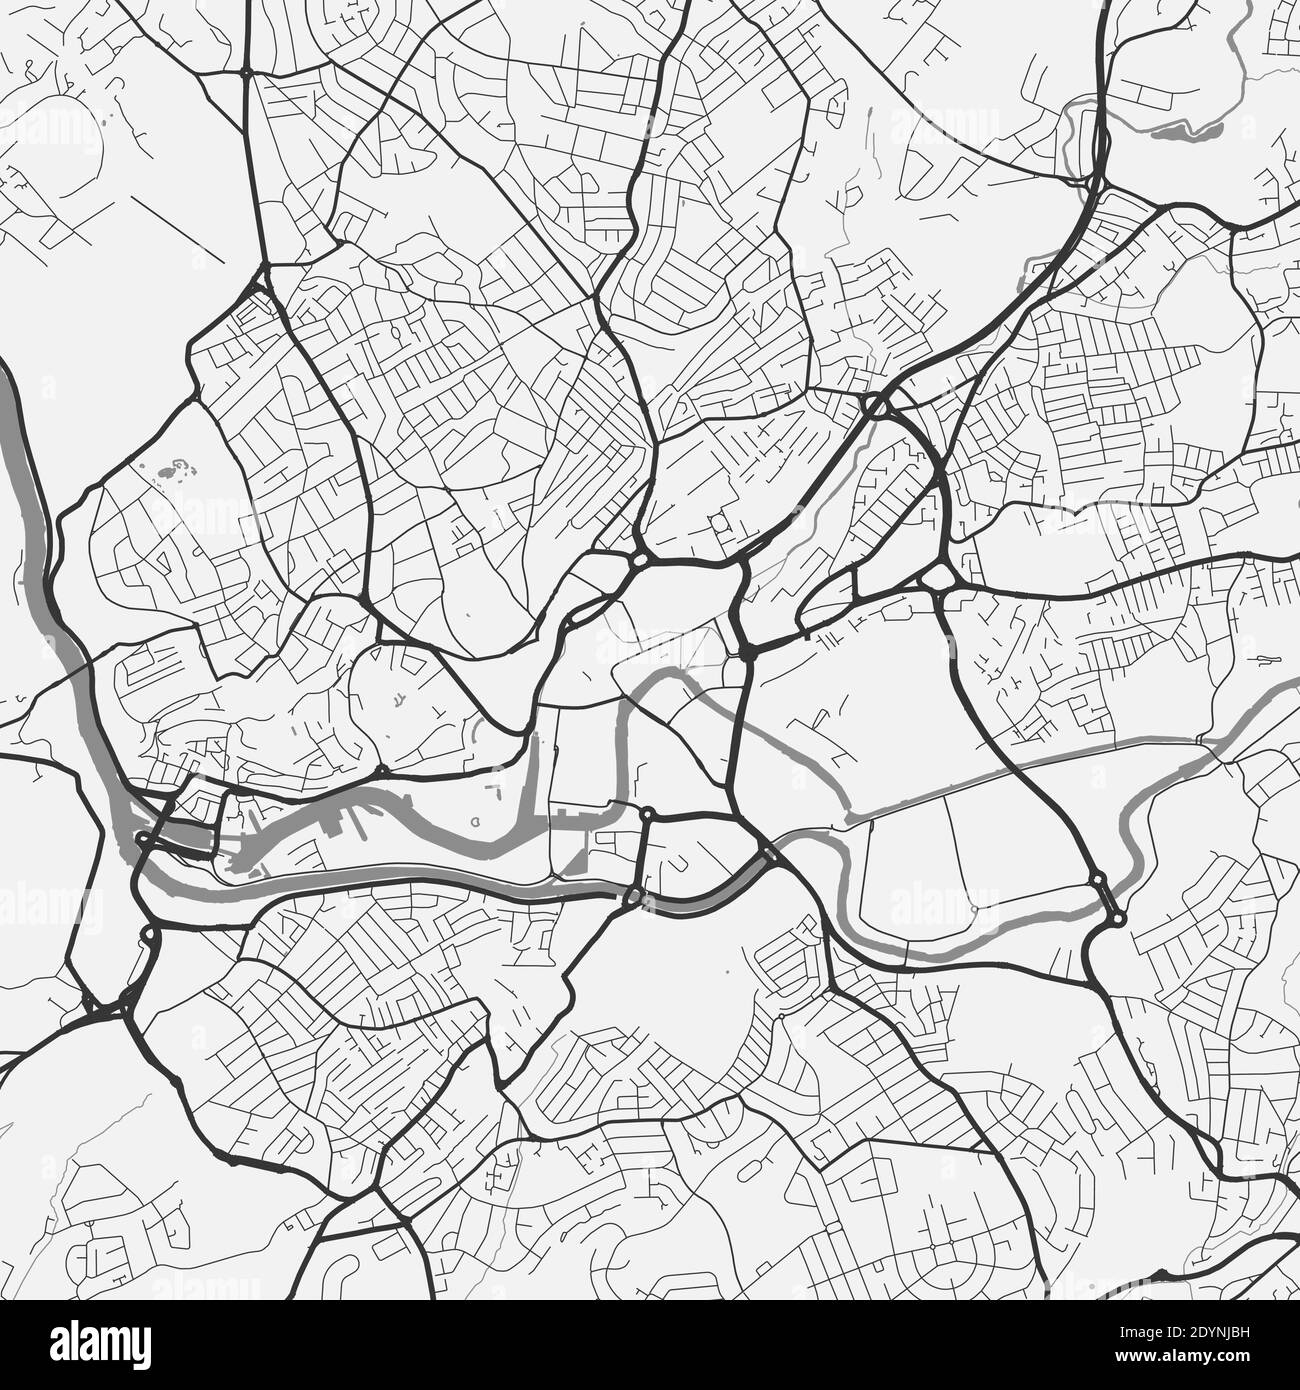 Stadtplan von Bristol. Vektorgrafik, Bristol Karte Graustufen Kunstposter. Straßenkarte mit Straßen, Ansicht der Metropolregion. Stock Vektor